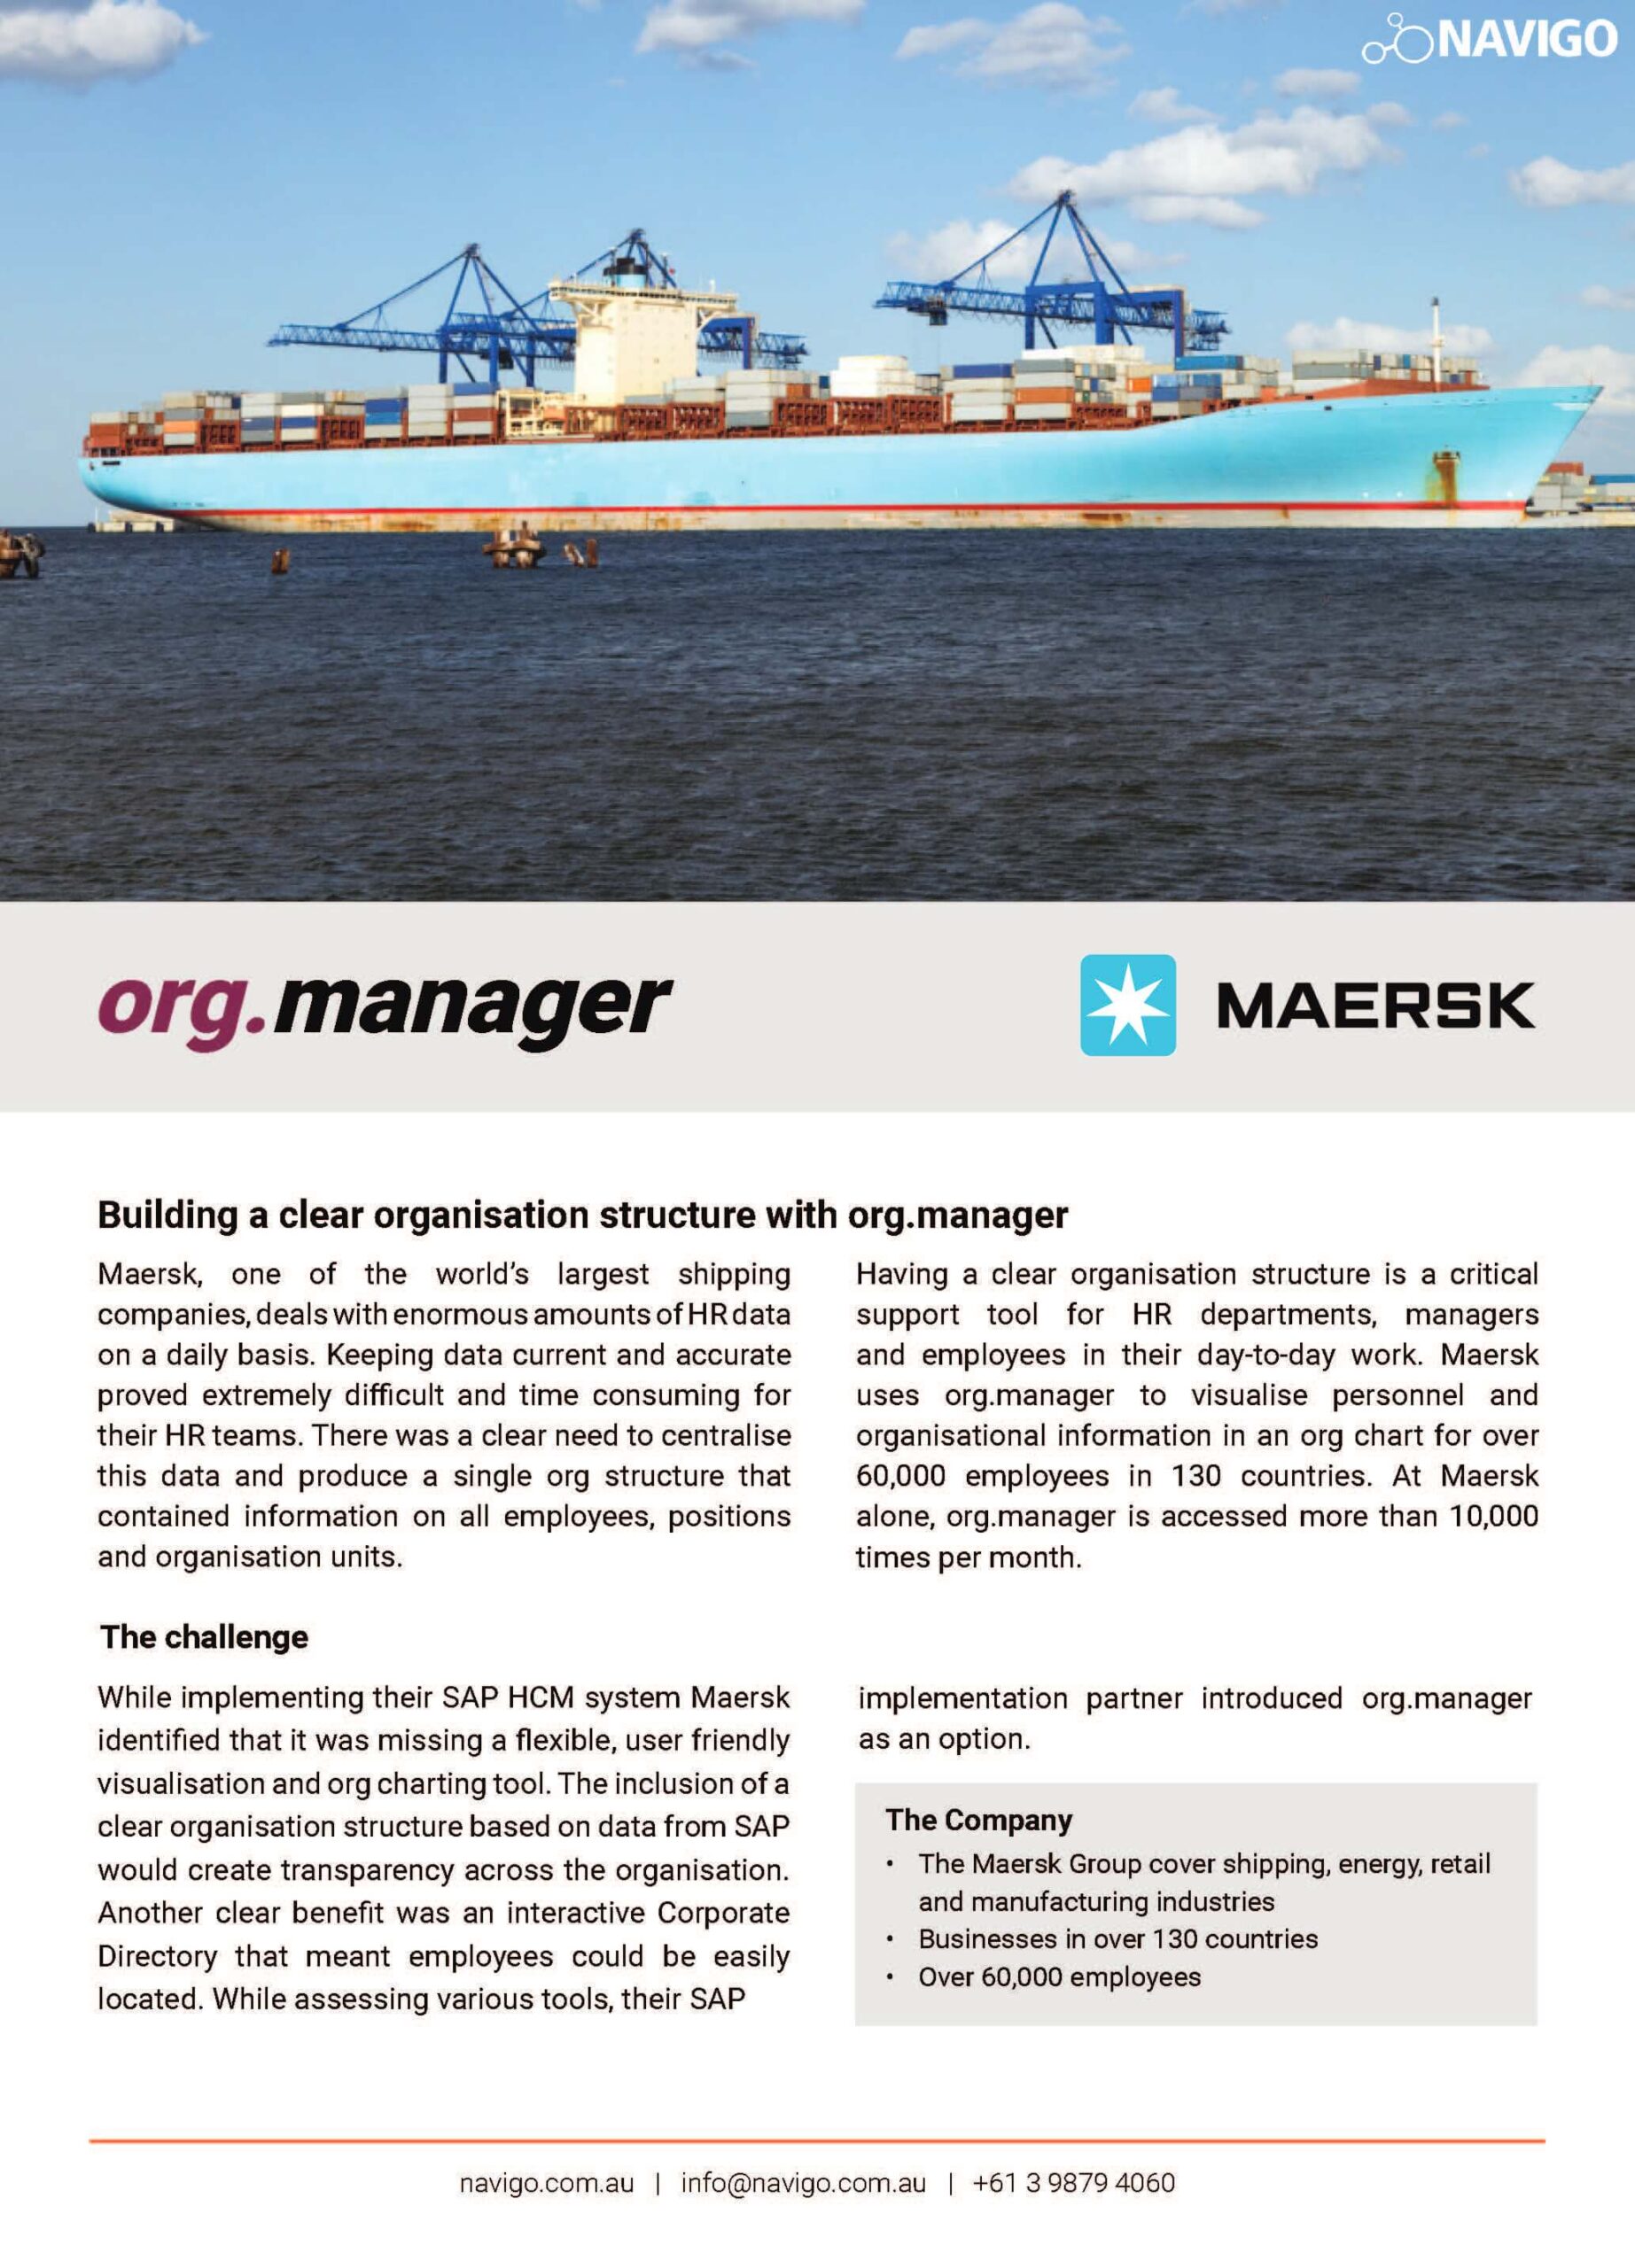 Maersk PDF